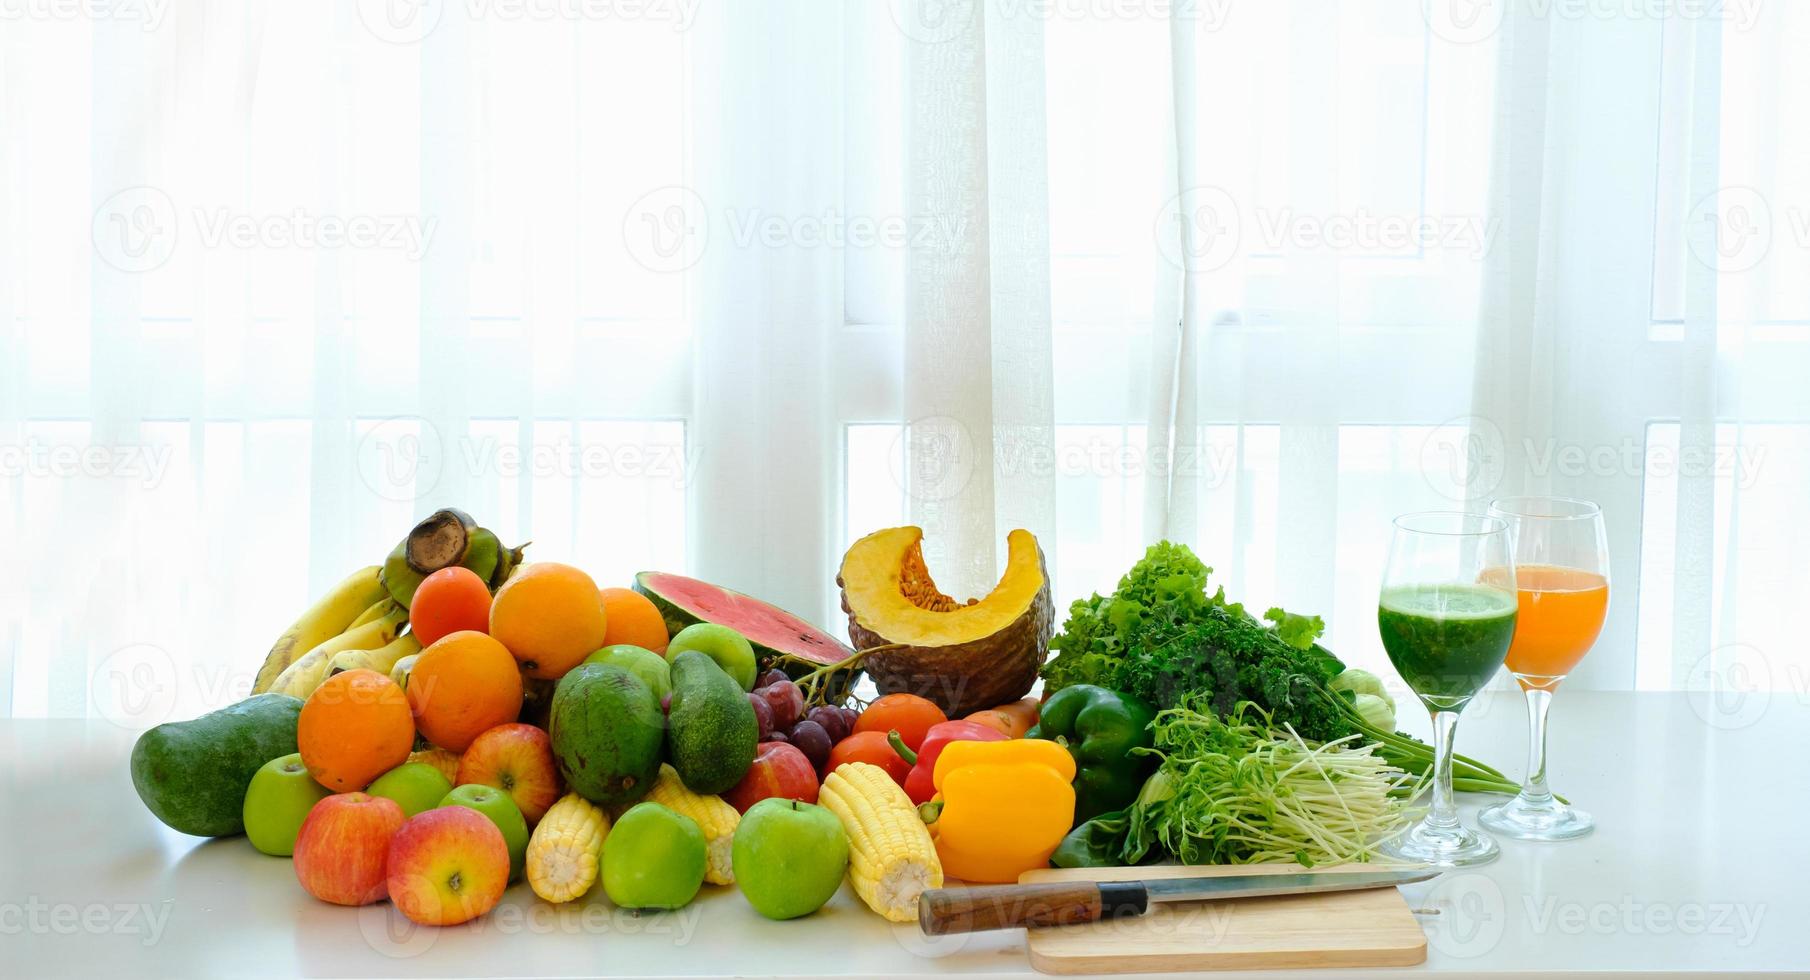 geassorteerde verse rijpe groenten en fruit op tafel met witte gordijn achtergrond foto